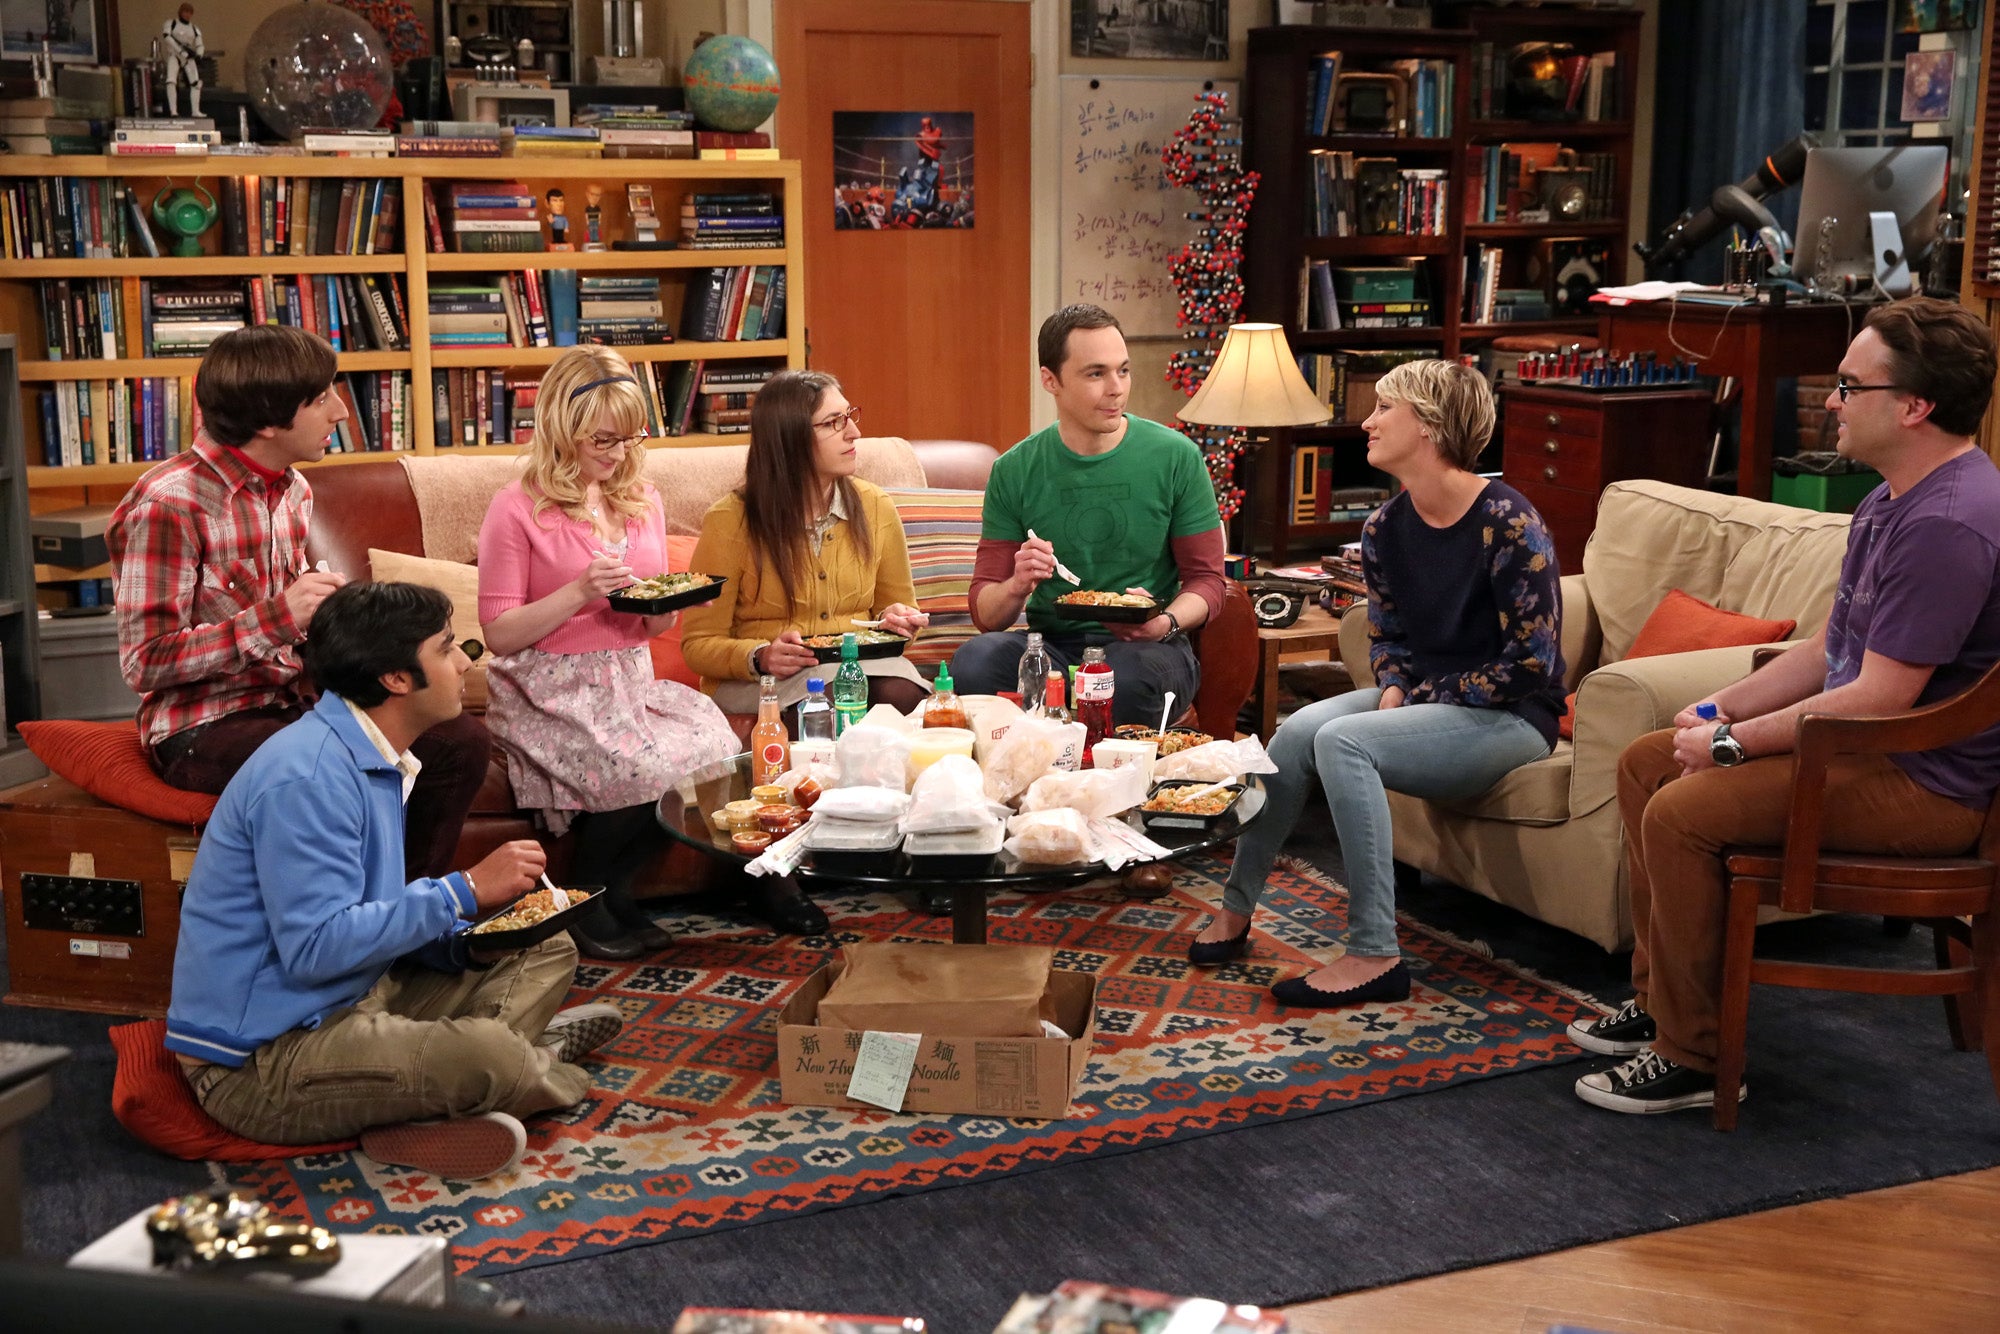 The Big Bang Theory - Seasons 1-11